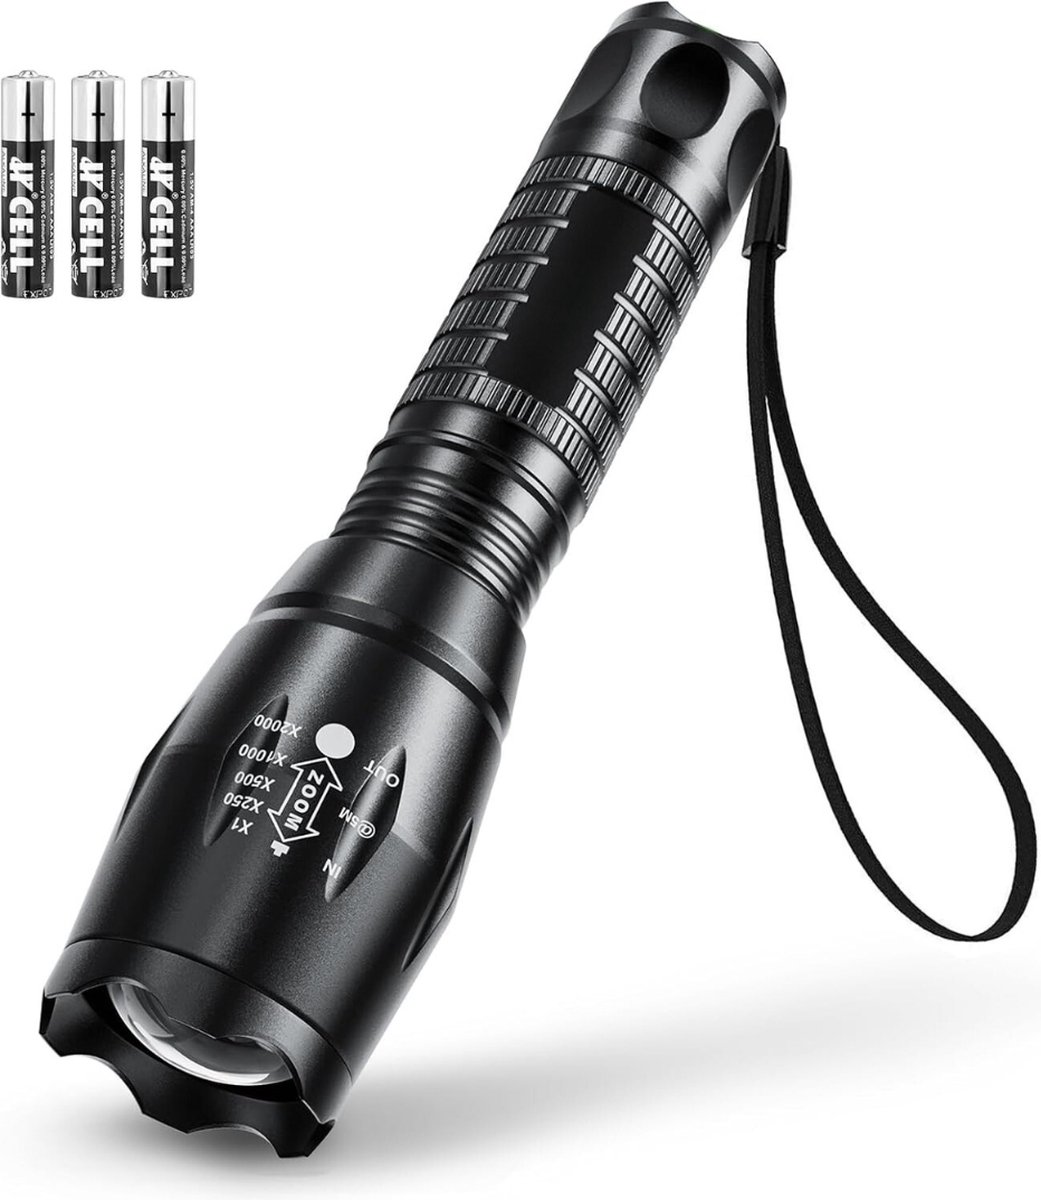 Militaire zaklamp - Zaklamp - Zaklampen - 4 schakelbare verlichtingsmodi - Zoomfunctie - USB C oplaadbaar - Zaklamp LED Oplaadbaar - 800 Lumen - Waterdicht - Zwart